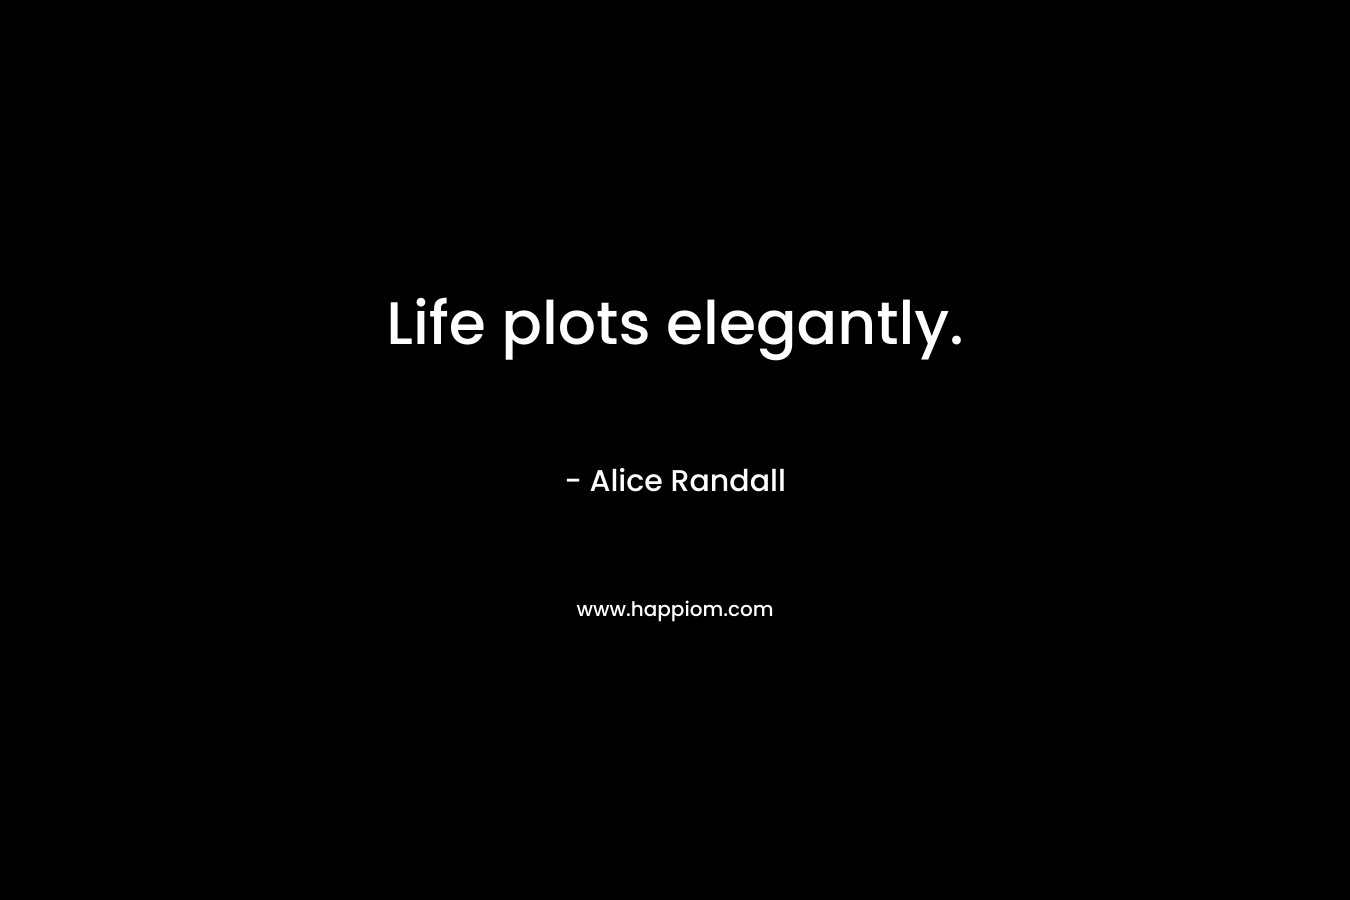 Life plots elegantly.